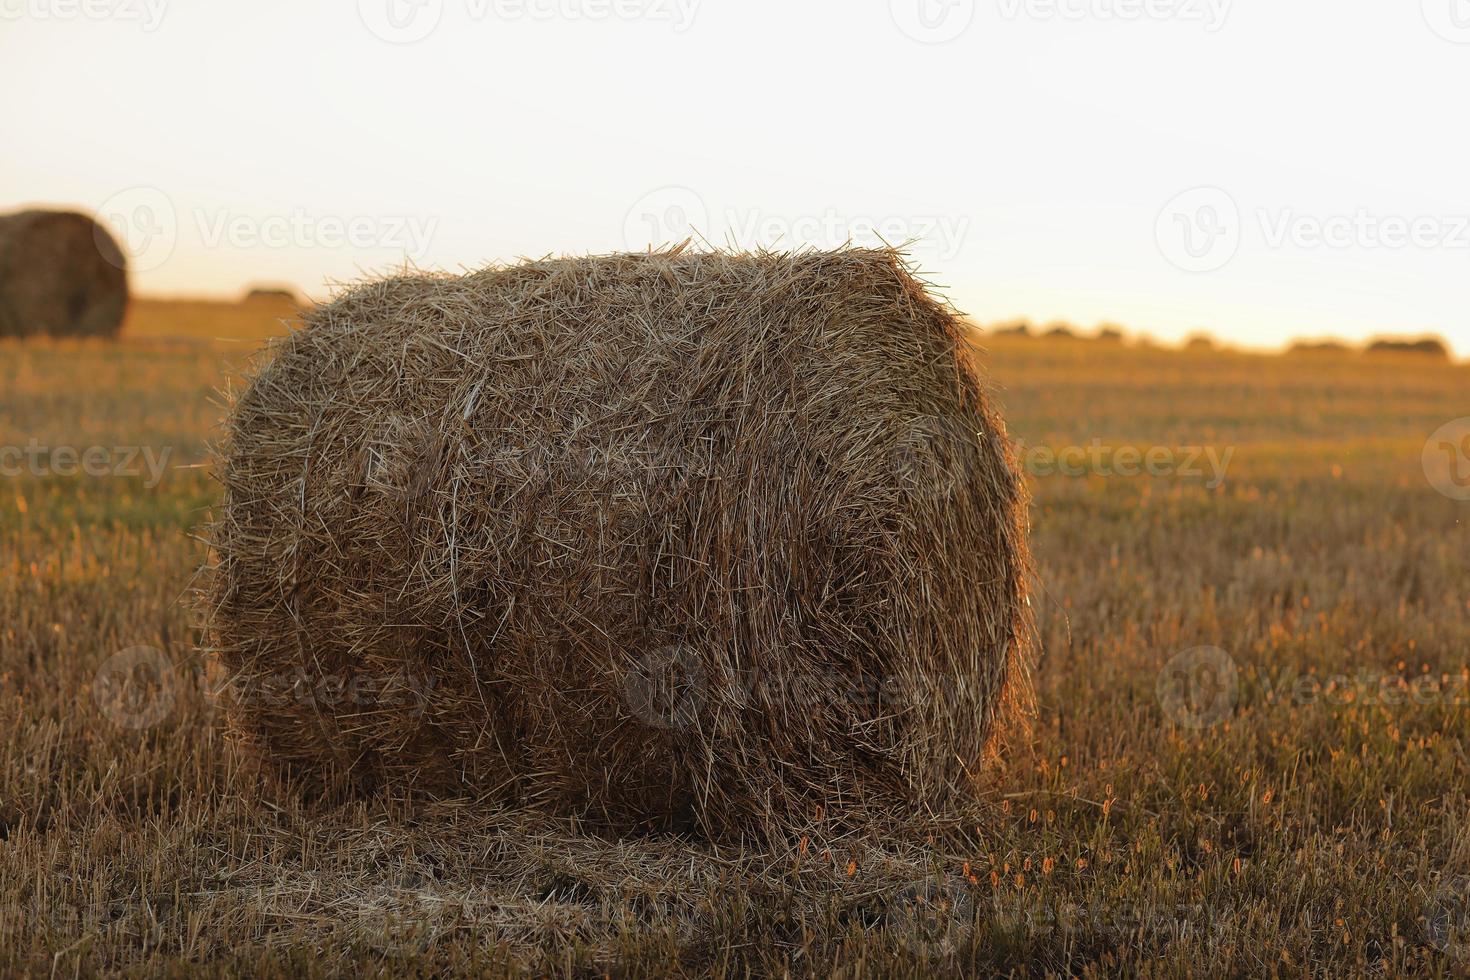 fardos de palha de feno de trigo empilhados em uma pilha no campo de restolho em uma noite de verão. fardos de palha em terras agrícolas com céu azul nublado foto